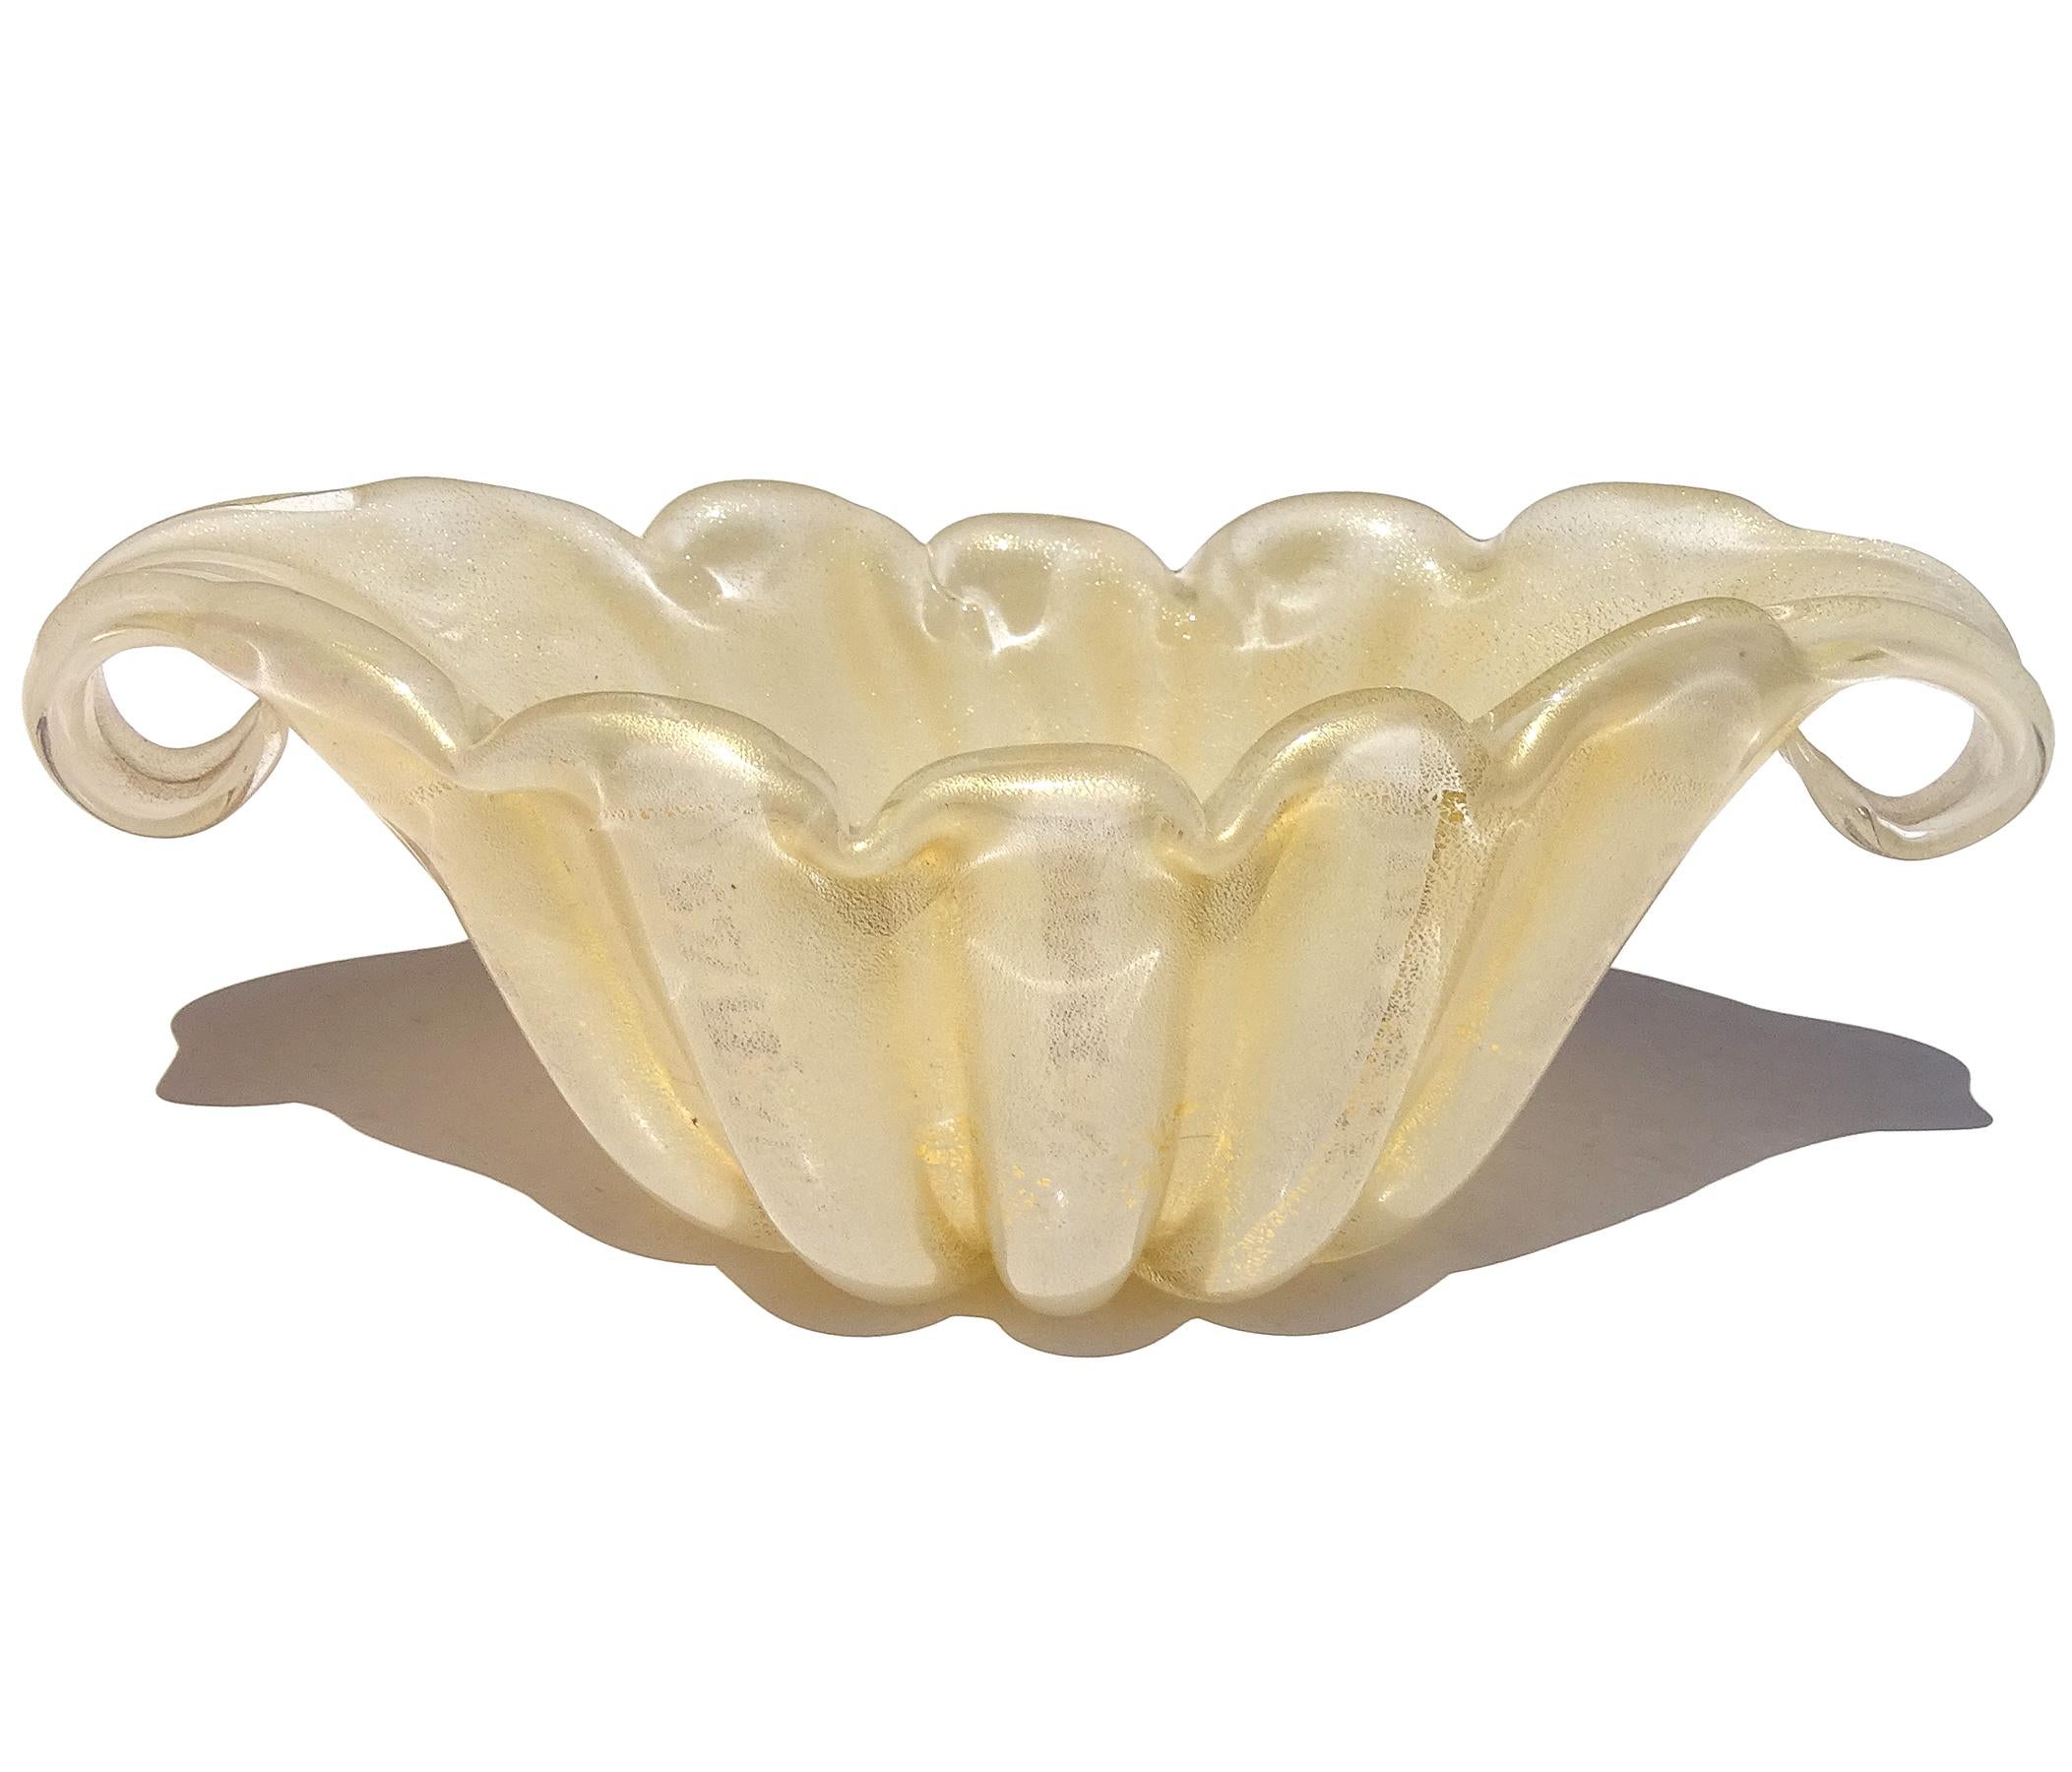 Precioso cuenco decorativo vintage de Murano soplado a mano en blanco y con motas doradas. Documentado al diseñador Ercole Barovier, para la empresa Barovier e Toso. Está hecha con un cristal blanco opalino. El cuenco no está cubierto de cristal